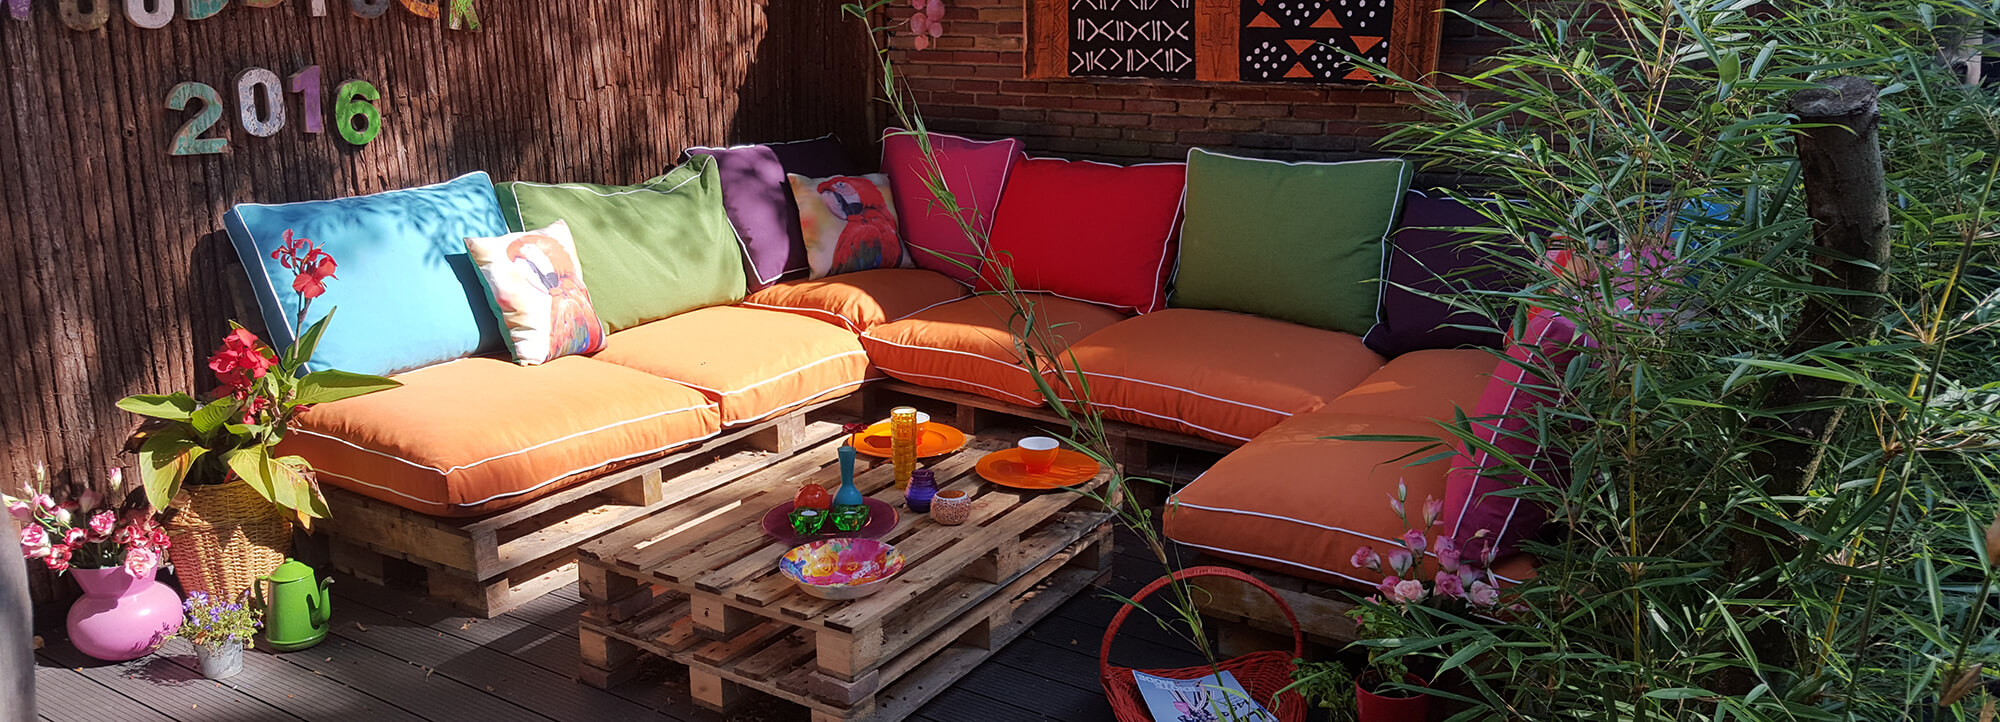 mythologie Het begin Dosering DIY: je eigen loungebank van houten pallets - Homeandgarden.nl